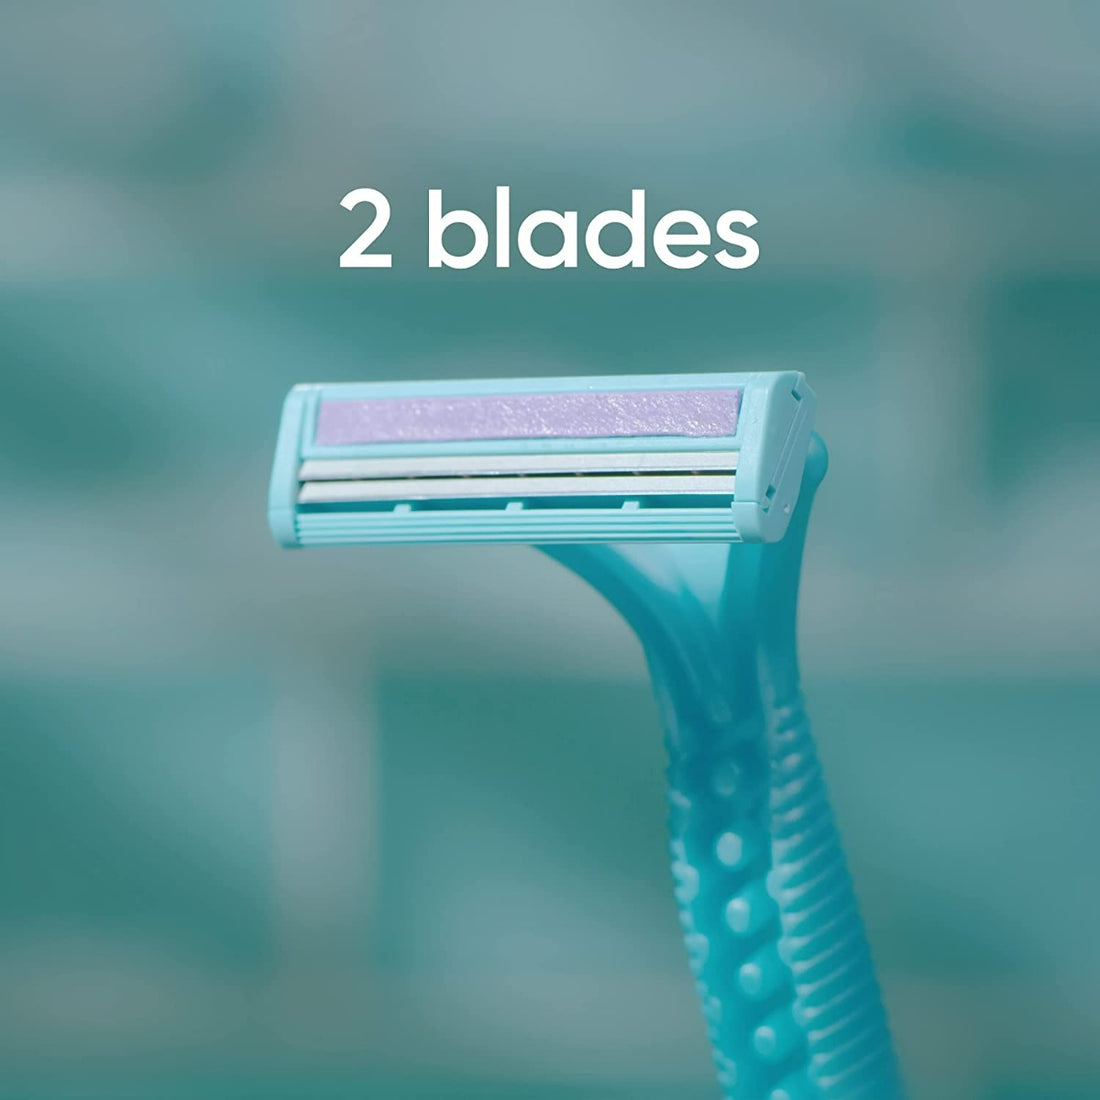 Gillette Simply Venus 2 Blades Disposable Razors for Women - 4pcs